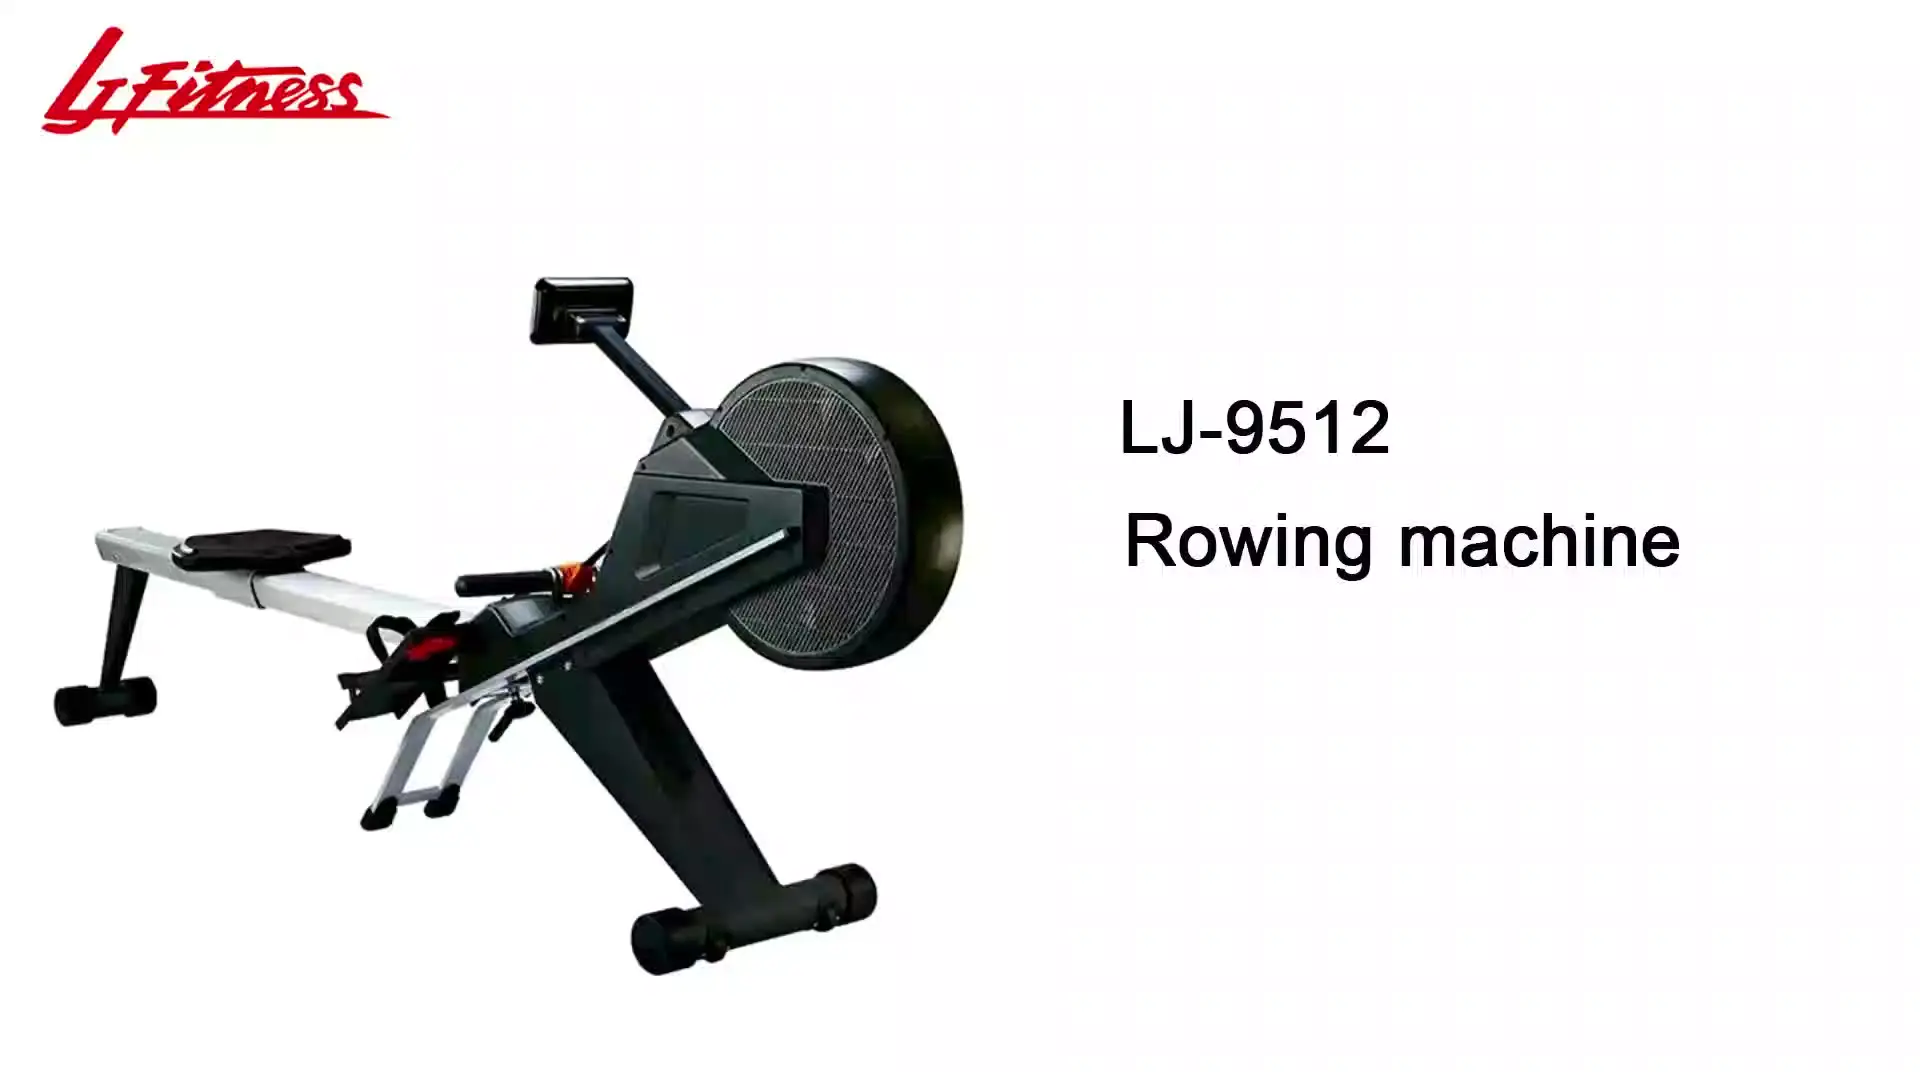 LJ-9512 Rowing machine